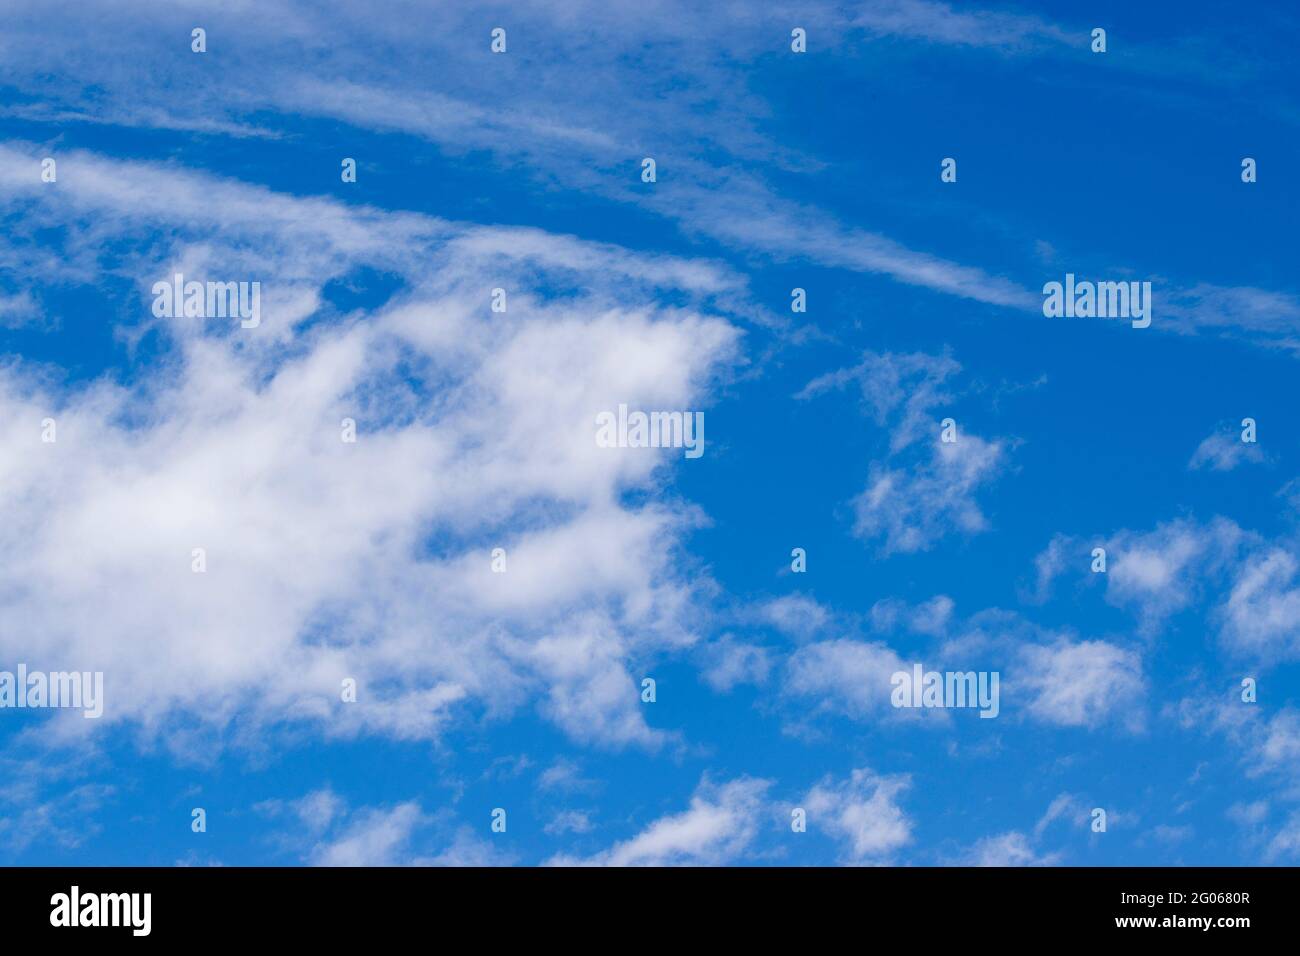 Cielo blu con nuvole bianche, immagine di riserva, Kolkata, Calcuatta, Bengala Occidentale, India, immagine stock di sfondo. Foto Stock